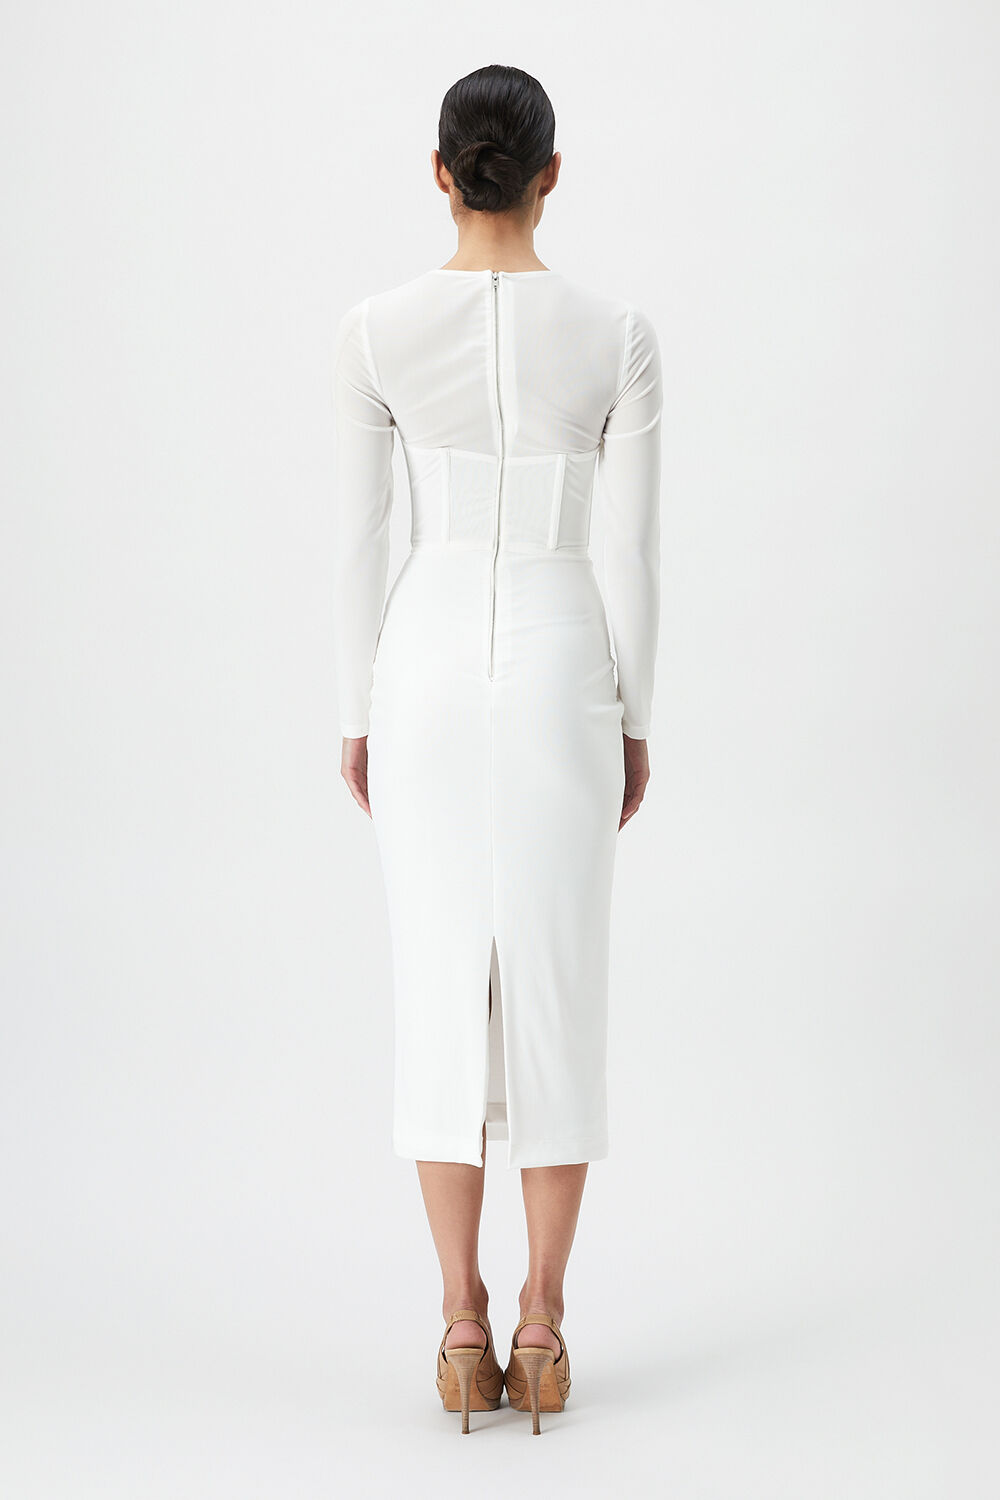 RAMONA CORSET MESH DRESS in colour BRIGHT WHITE